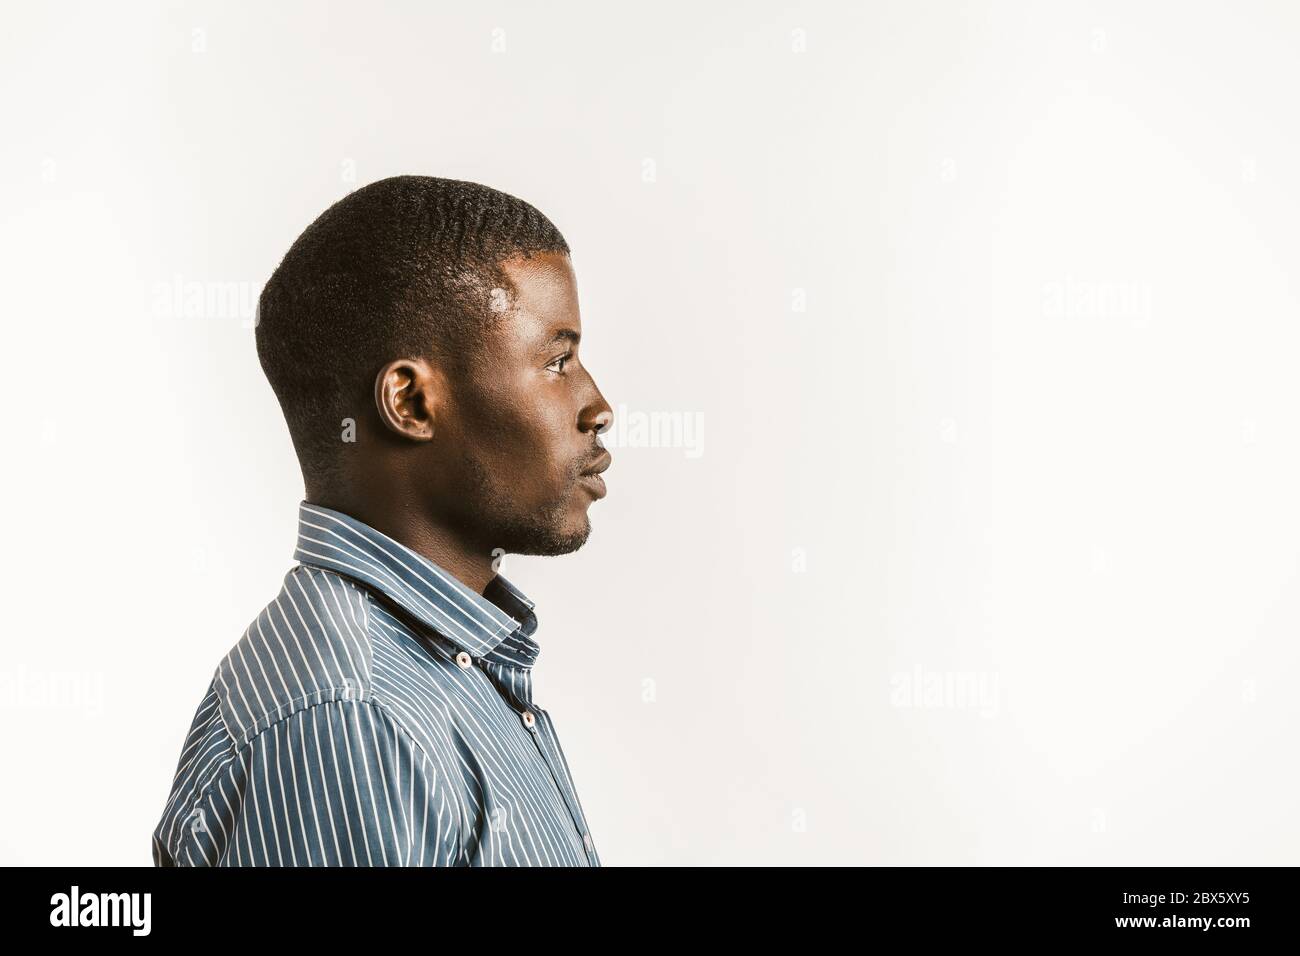 Junger Afrikaner auf weißem Hintergrund. Profilansicht eines ernsthaften afro-amerikanischen Studenten oder Geschäftsmannes, der auf der rechten Seite mit Textraum oder Textraum schaut Stockfoto